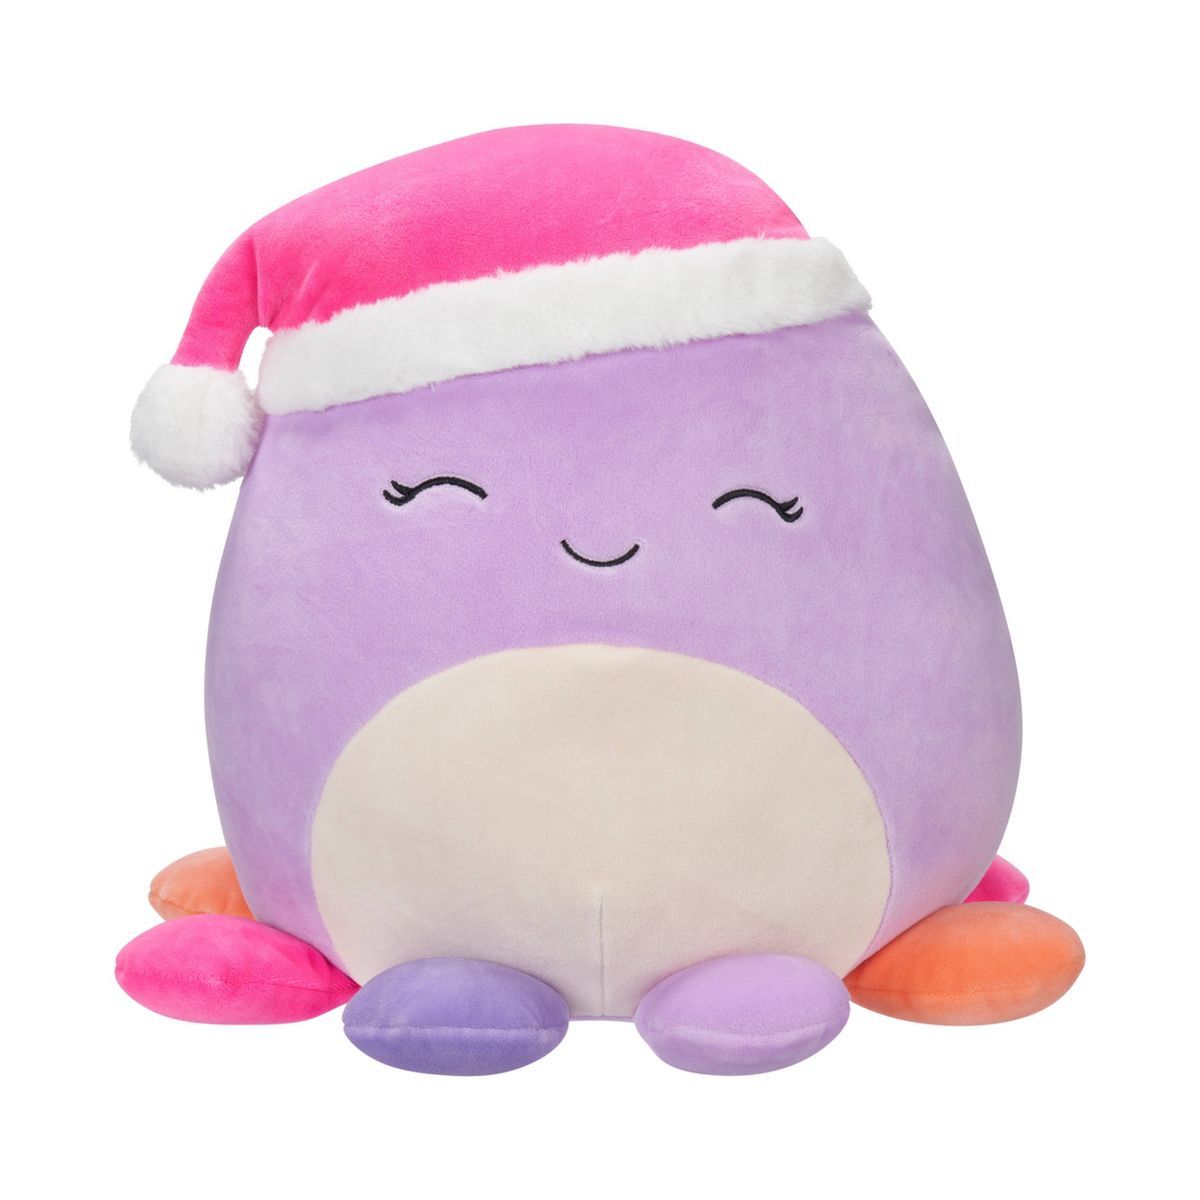 Squishmallows 12" Beula Purple Octopus with Santa Hat Medium Plush | Target